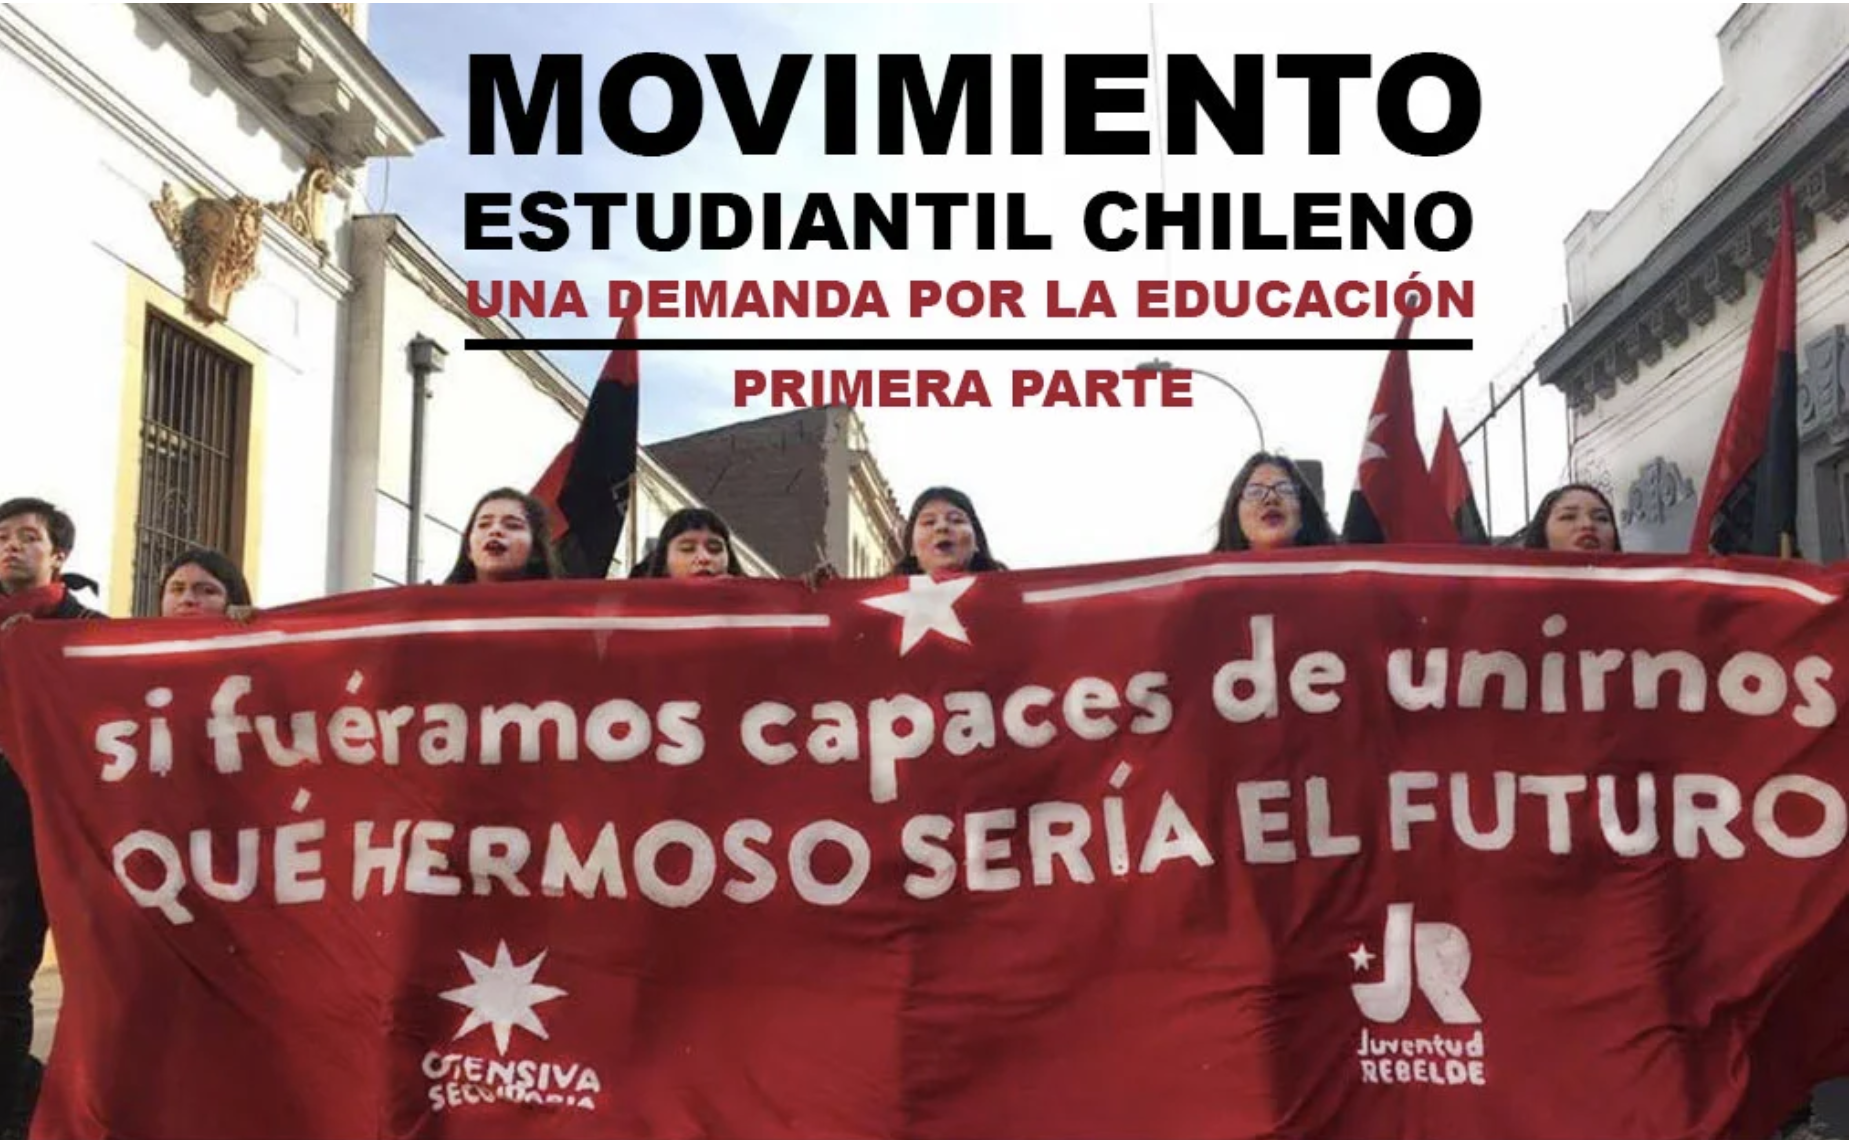 Movimiento estudiantil chileno, una demanda por la educación